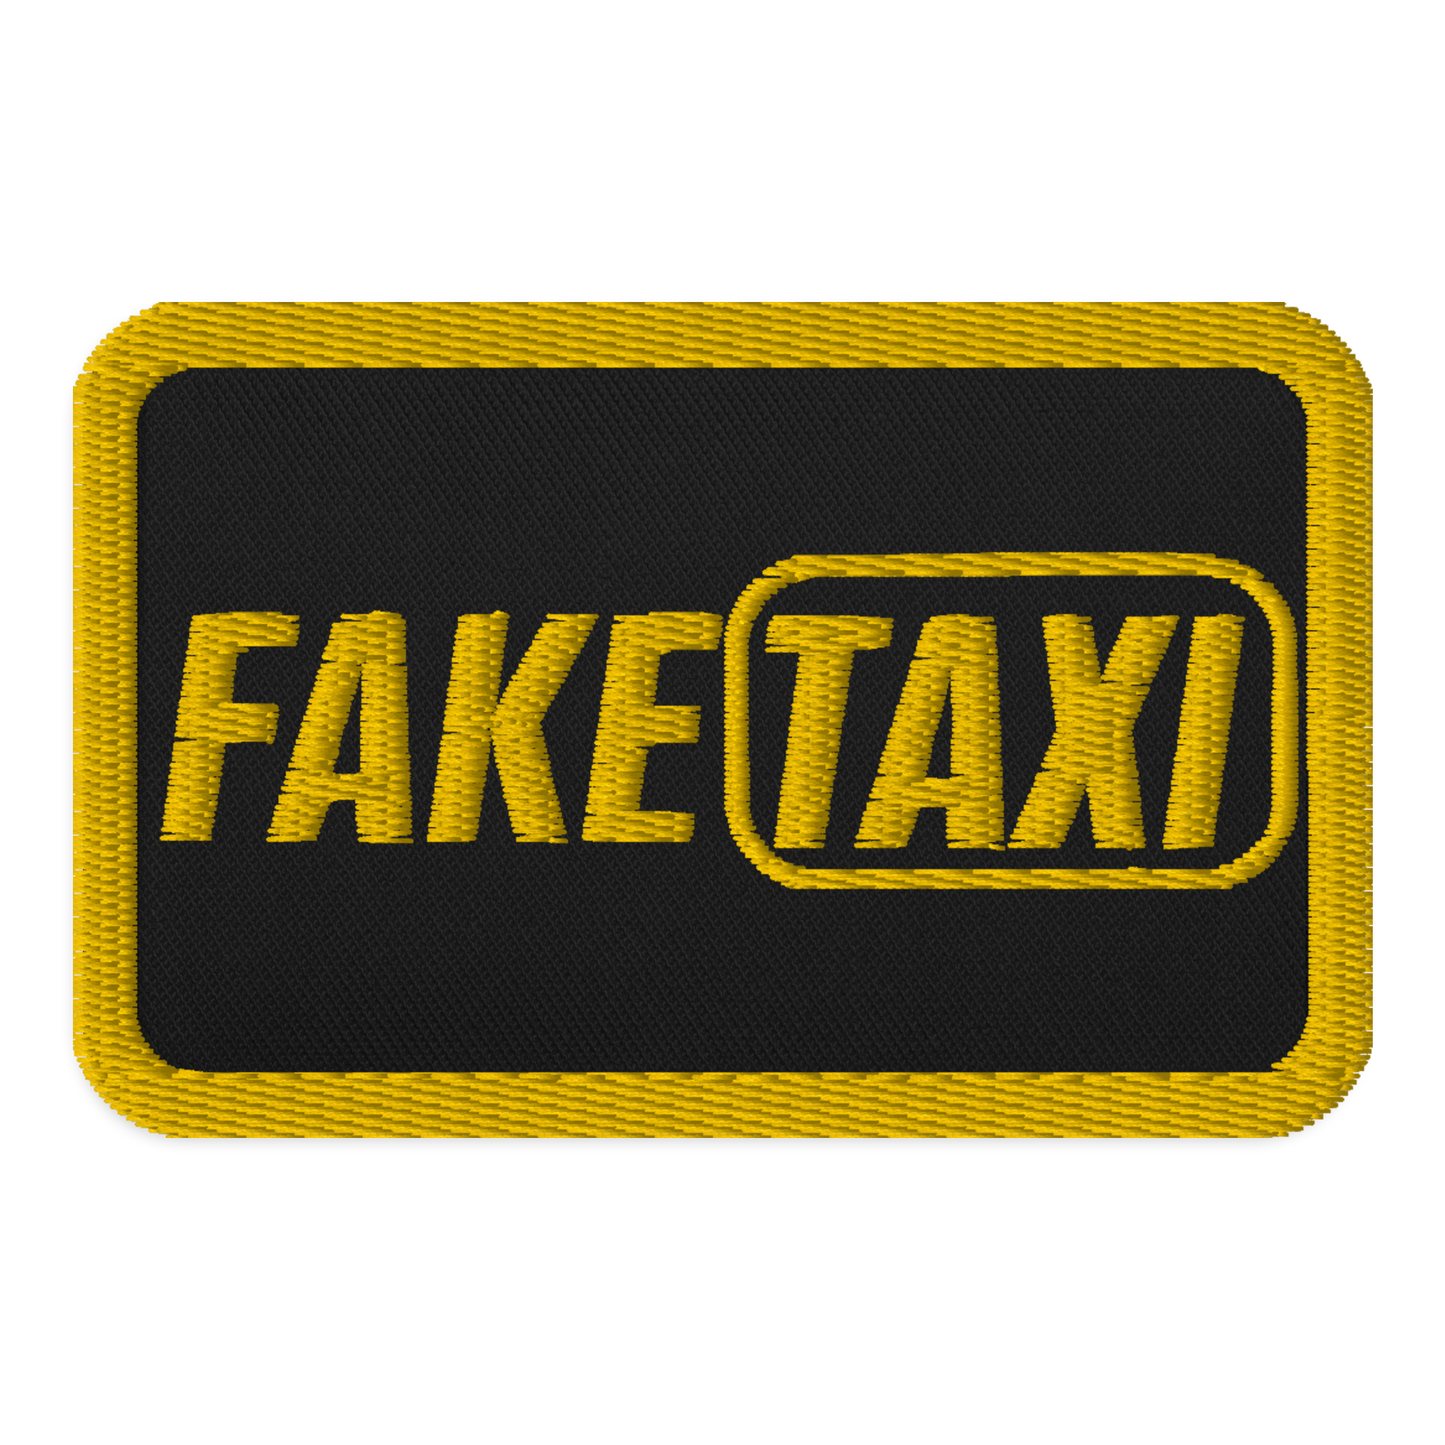 Meme Patches: Taxi Service